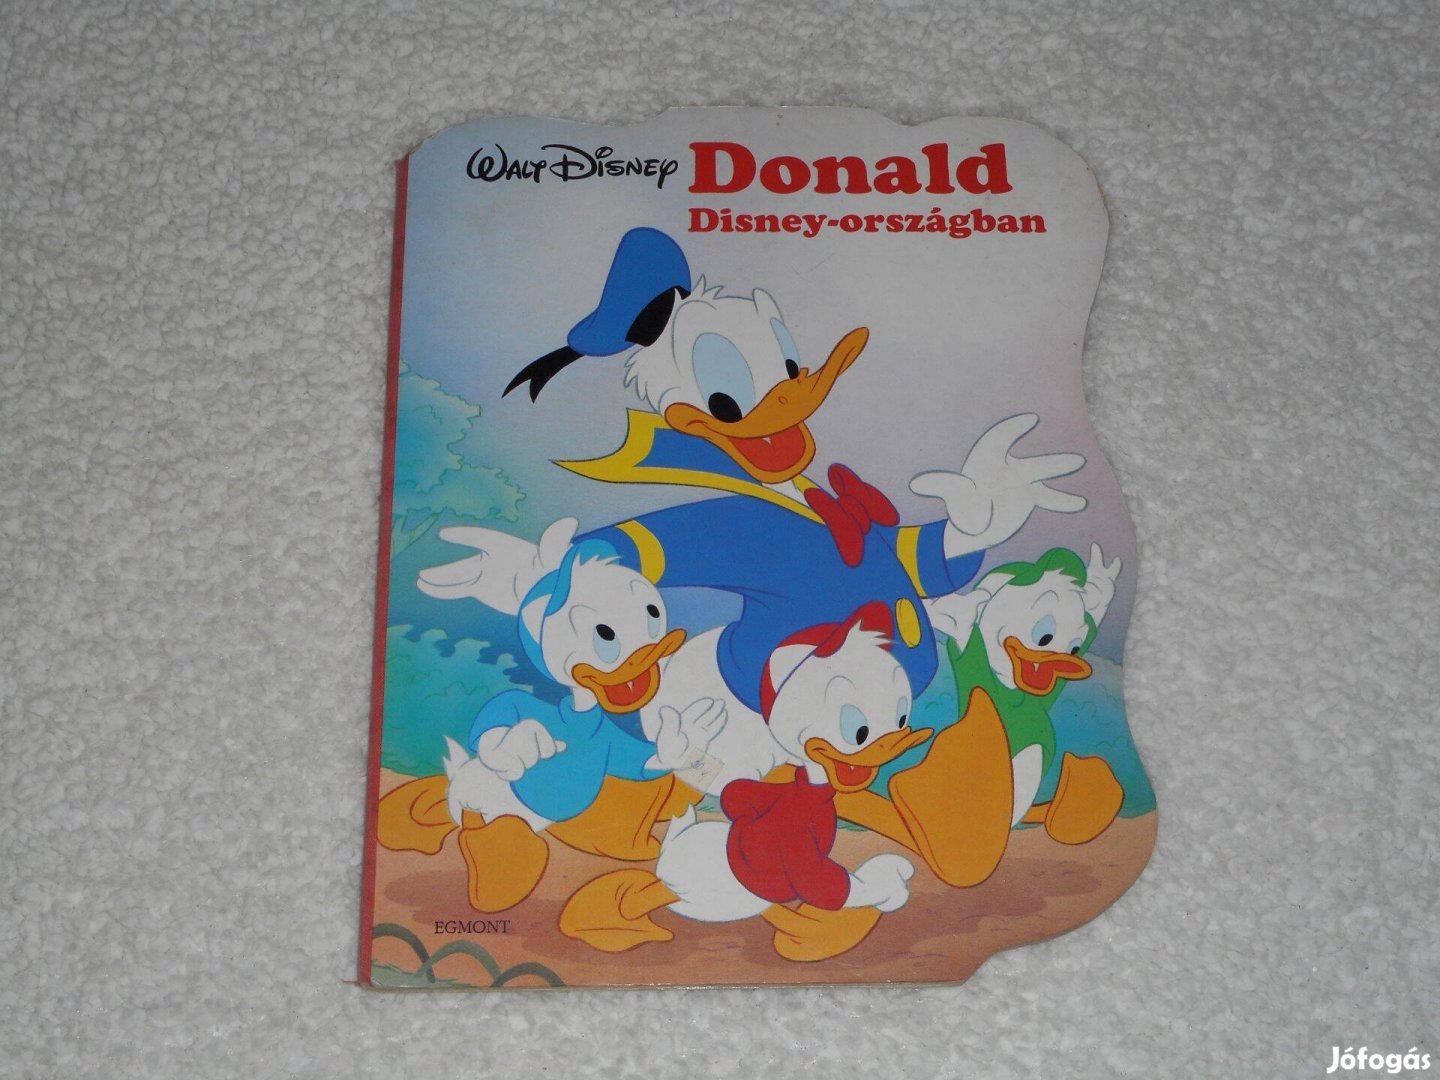 Walt Disney - Donald Disney-országban (Egmont kiadó, 1993)